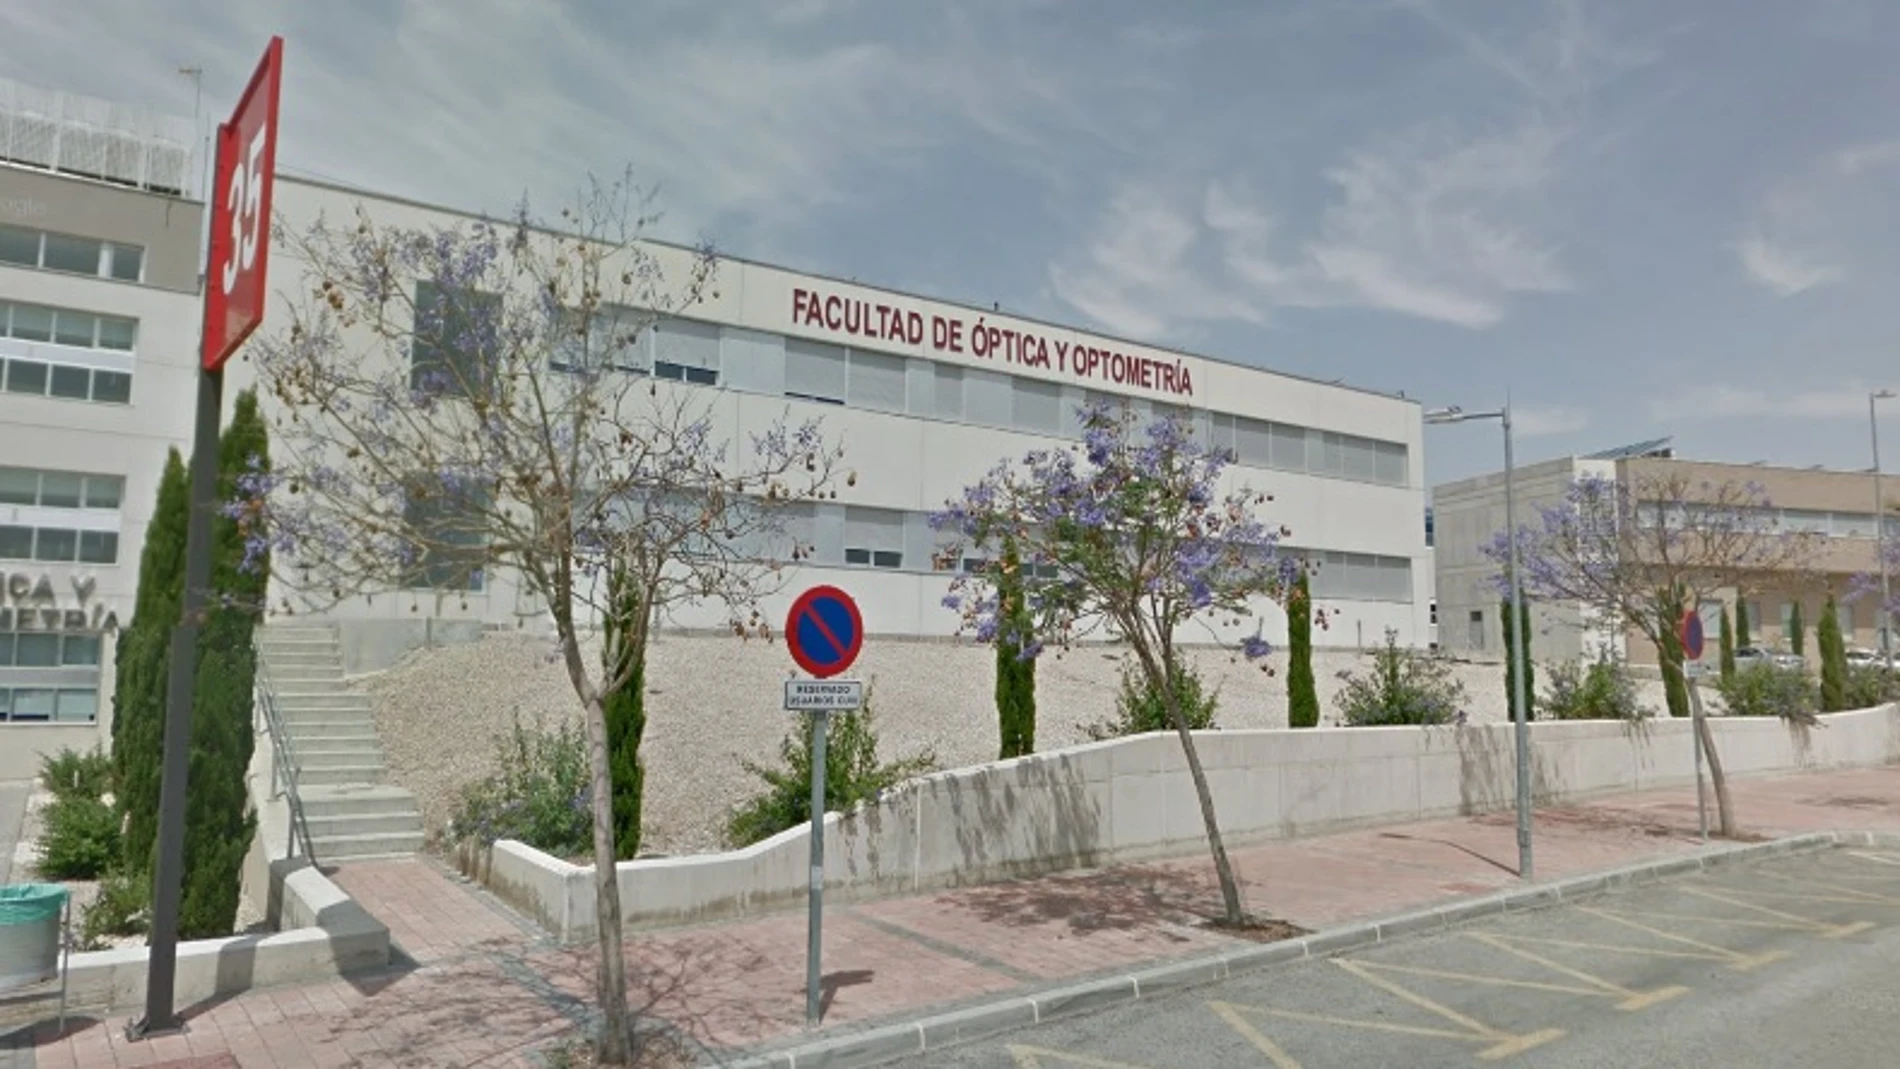 La Facultad de Óptica y Optometría de la Universidad de Murcia